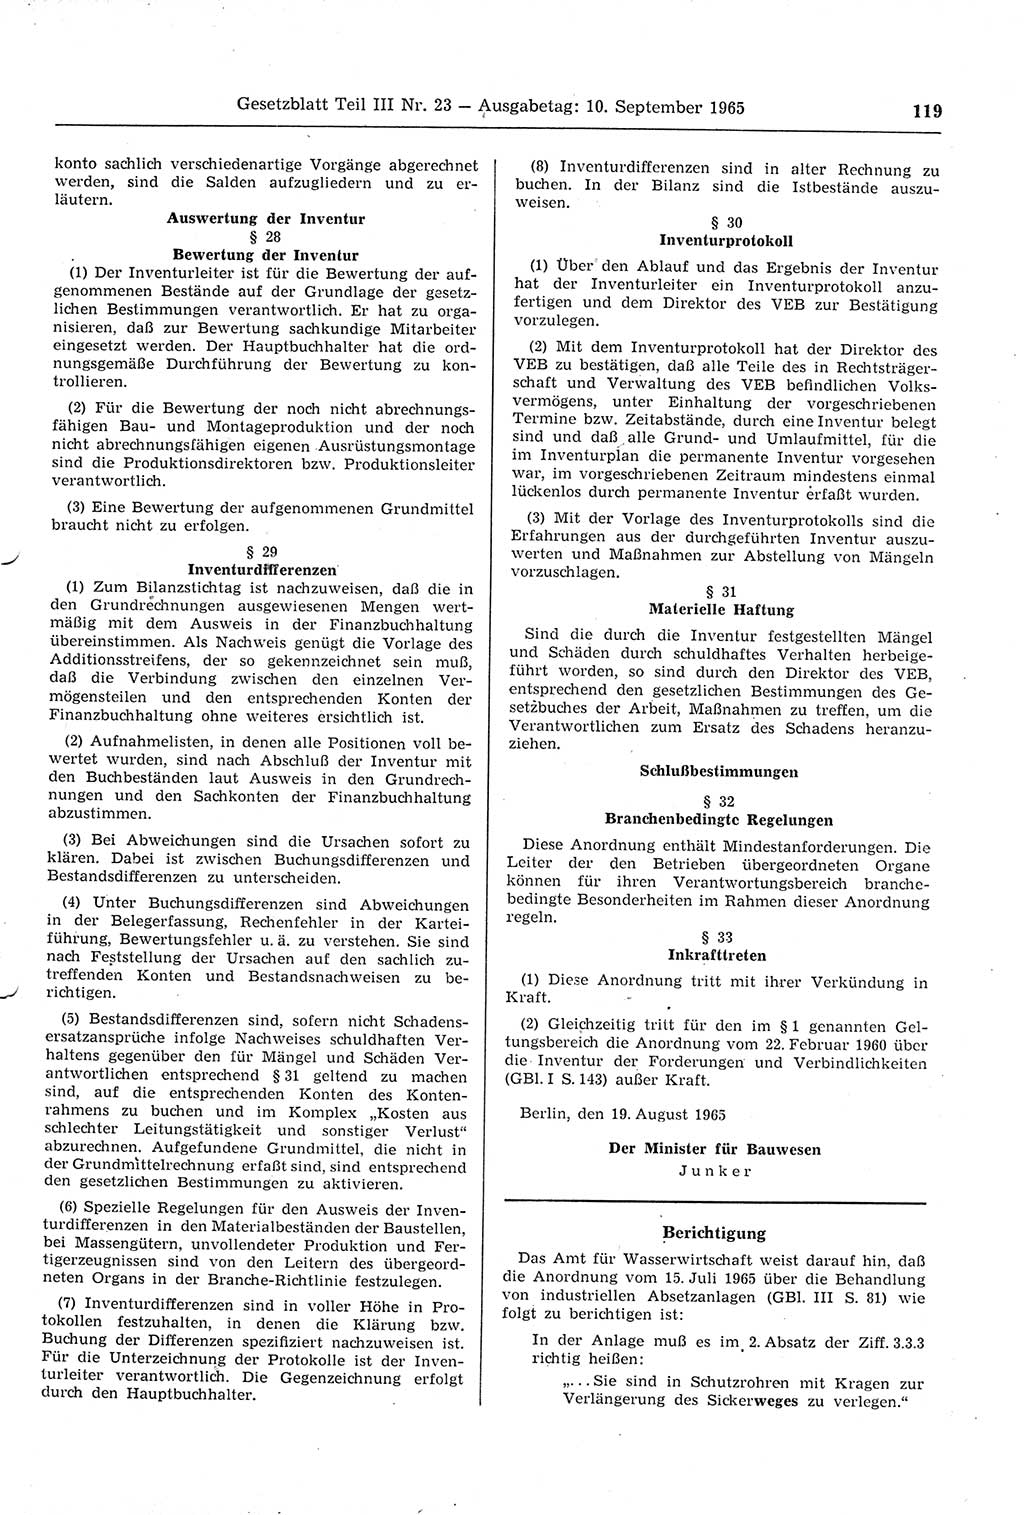 Gesetzblatt (GBl.) der Deutschen Demokratischen Republik (DDR) Teil ⅠⅠⅠ 1965, Seite 119 (GBl. DDR ⅠⅠⅠ 1965, S. 119)